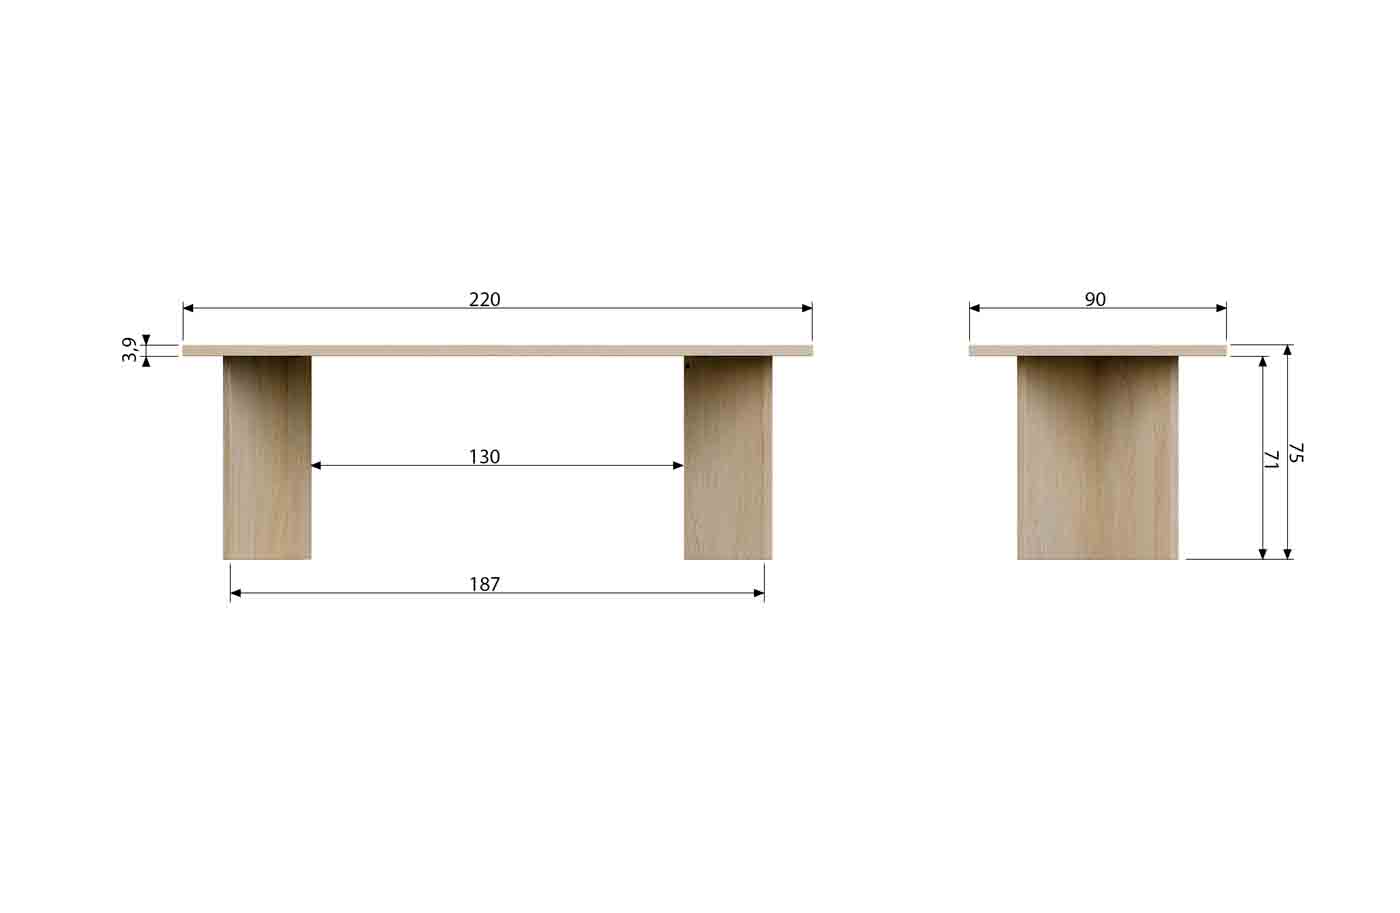 Hochwertiger Esstisch Eiche Angle in 220cm Länge mit feinem Echtholzfurnier. Tischplatte und Gestell in Eichenholz gefertigt